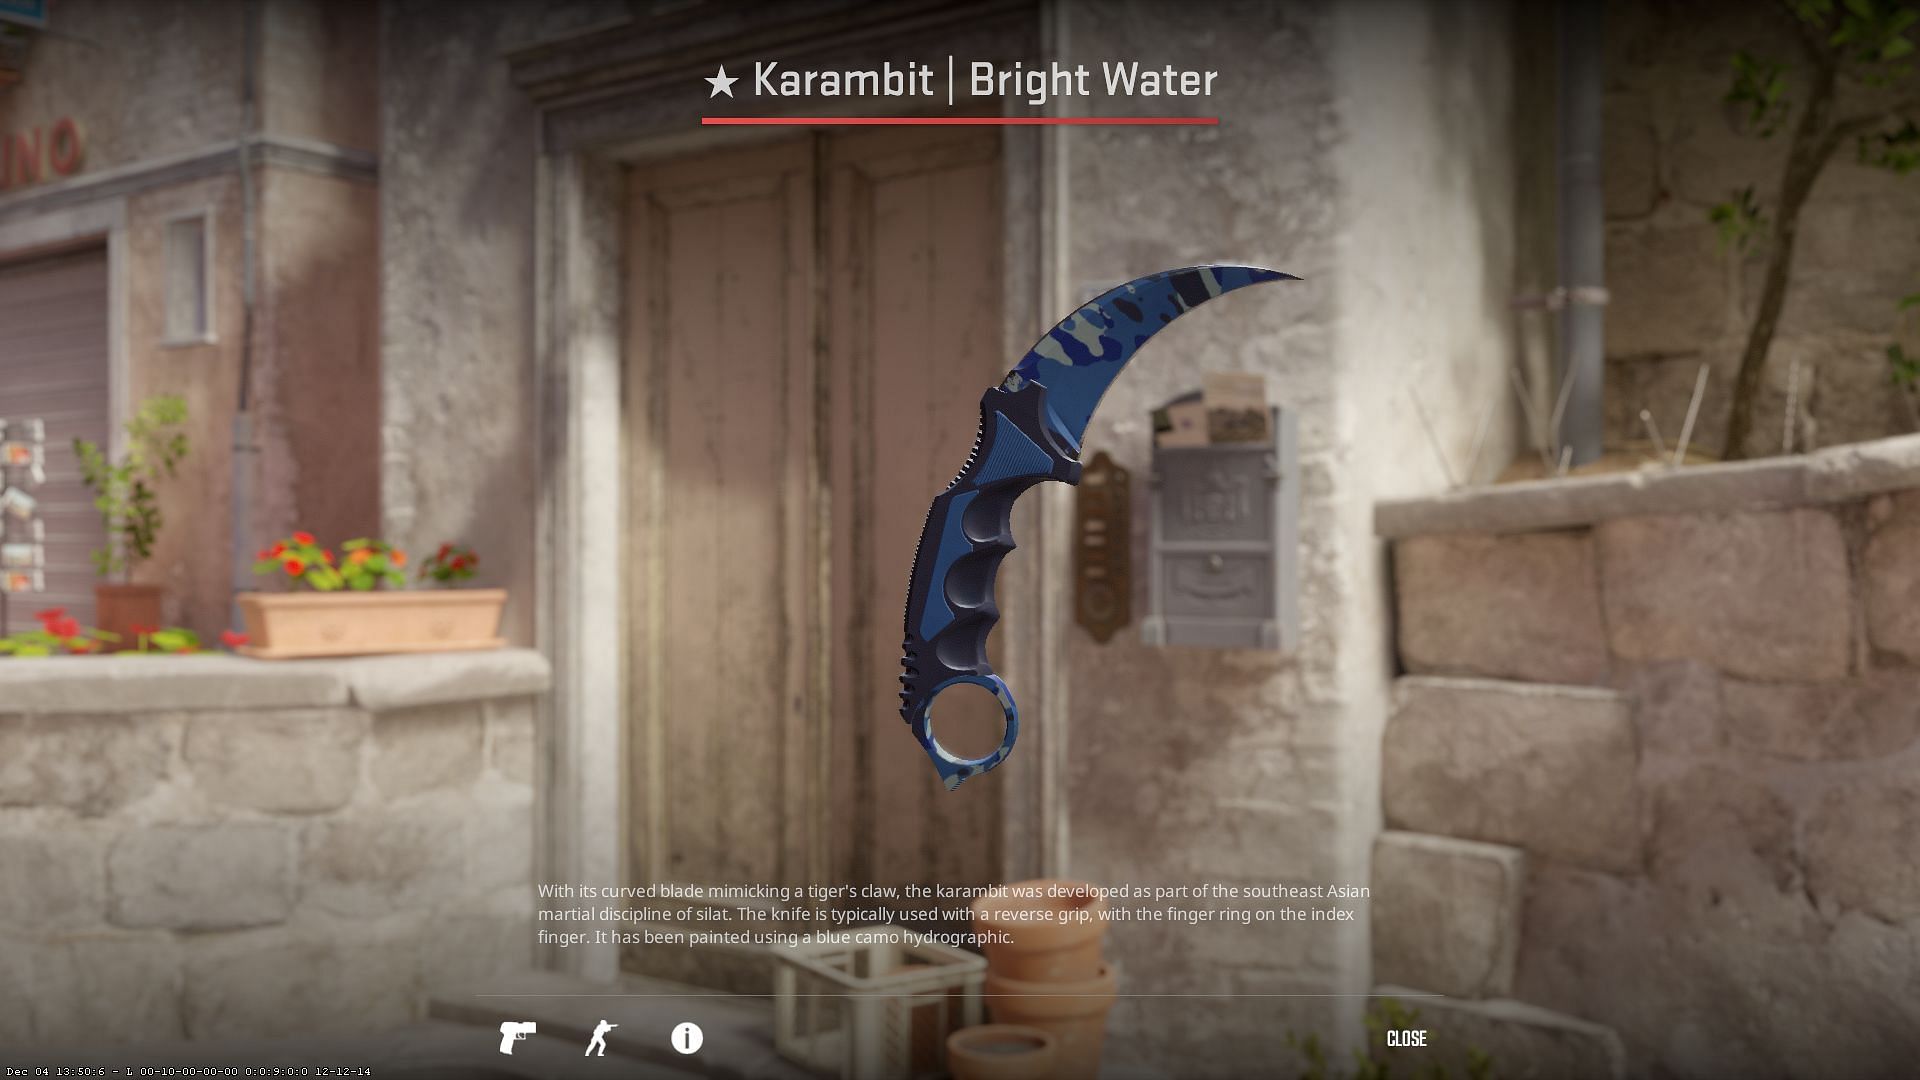 Karambit Bright Water (Image via Valve)